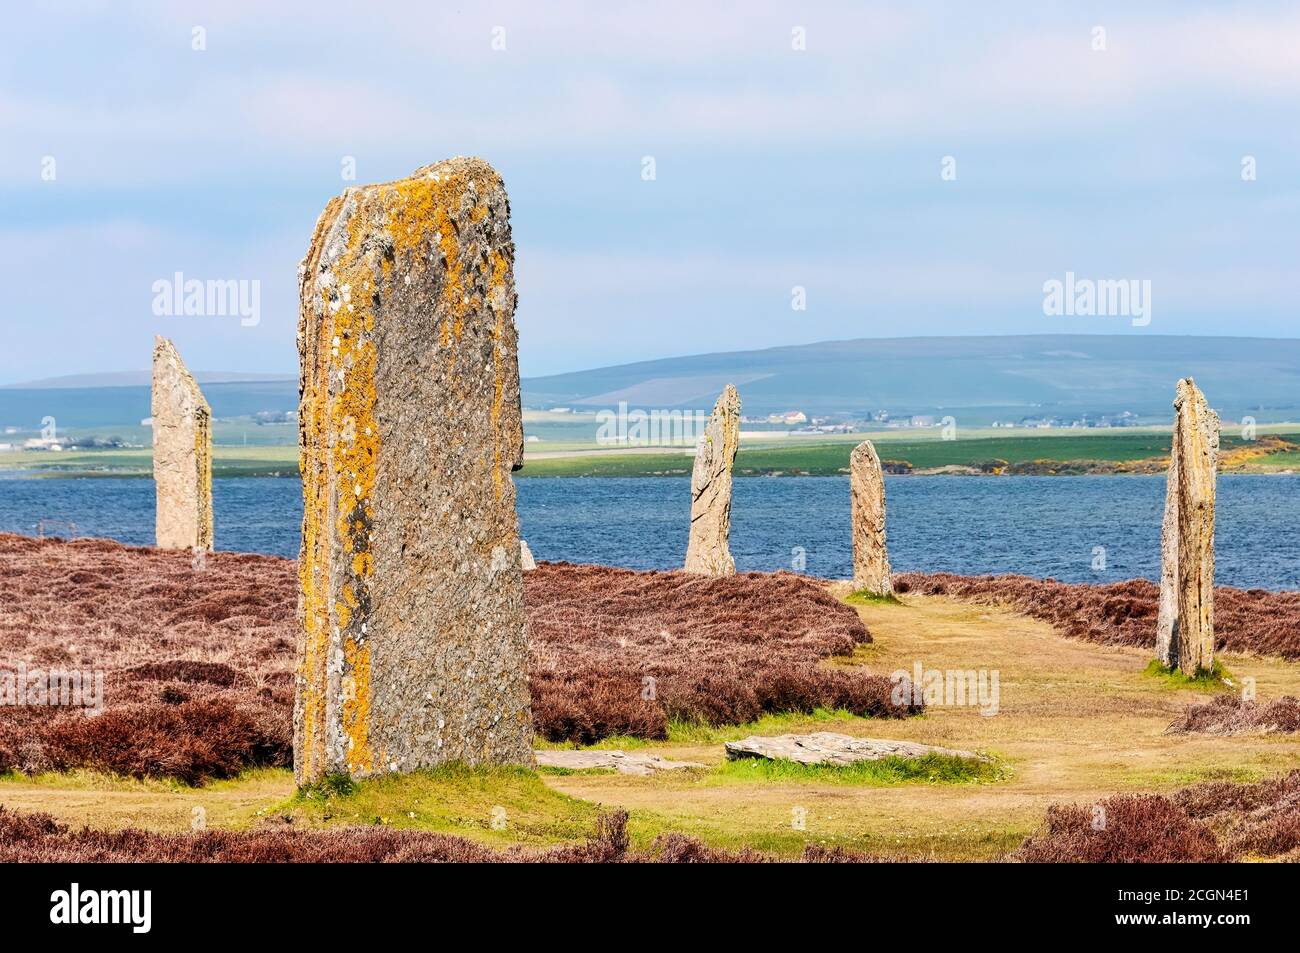 Les pierres sur pied de Stenness datent d'au moins 3100BC et font partie du cœur du site néolithique du patrimoine mondial de l'UNESCO Orkney, en Écosse, au Royaume-Uni Banque D'Images